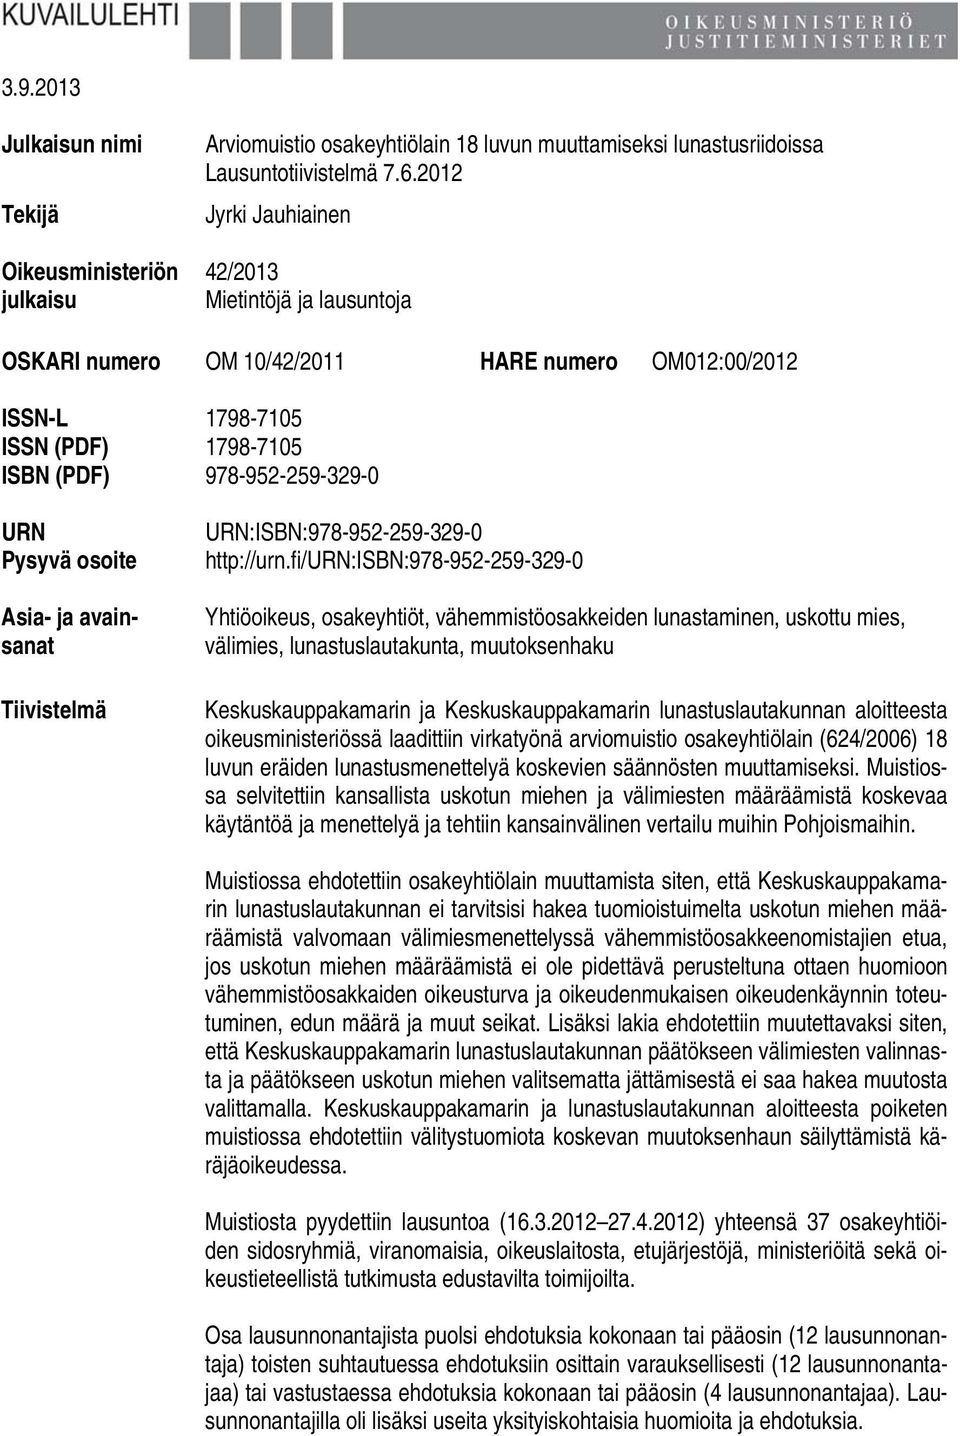 ja avainsanat Tiivistelmä URN:ISBN:978-952-259-329-0 http://urn.